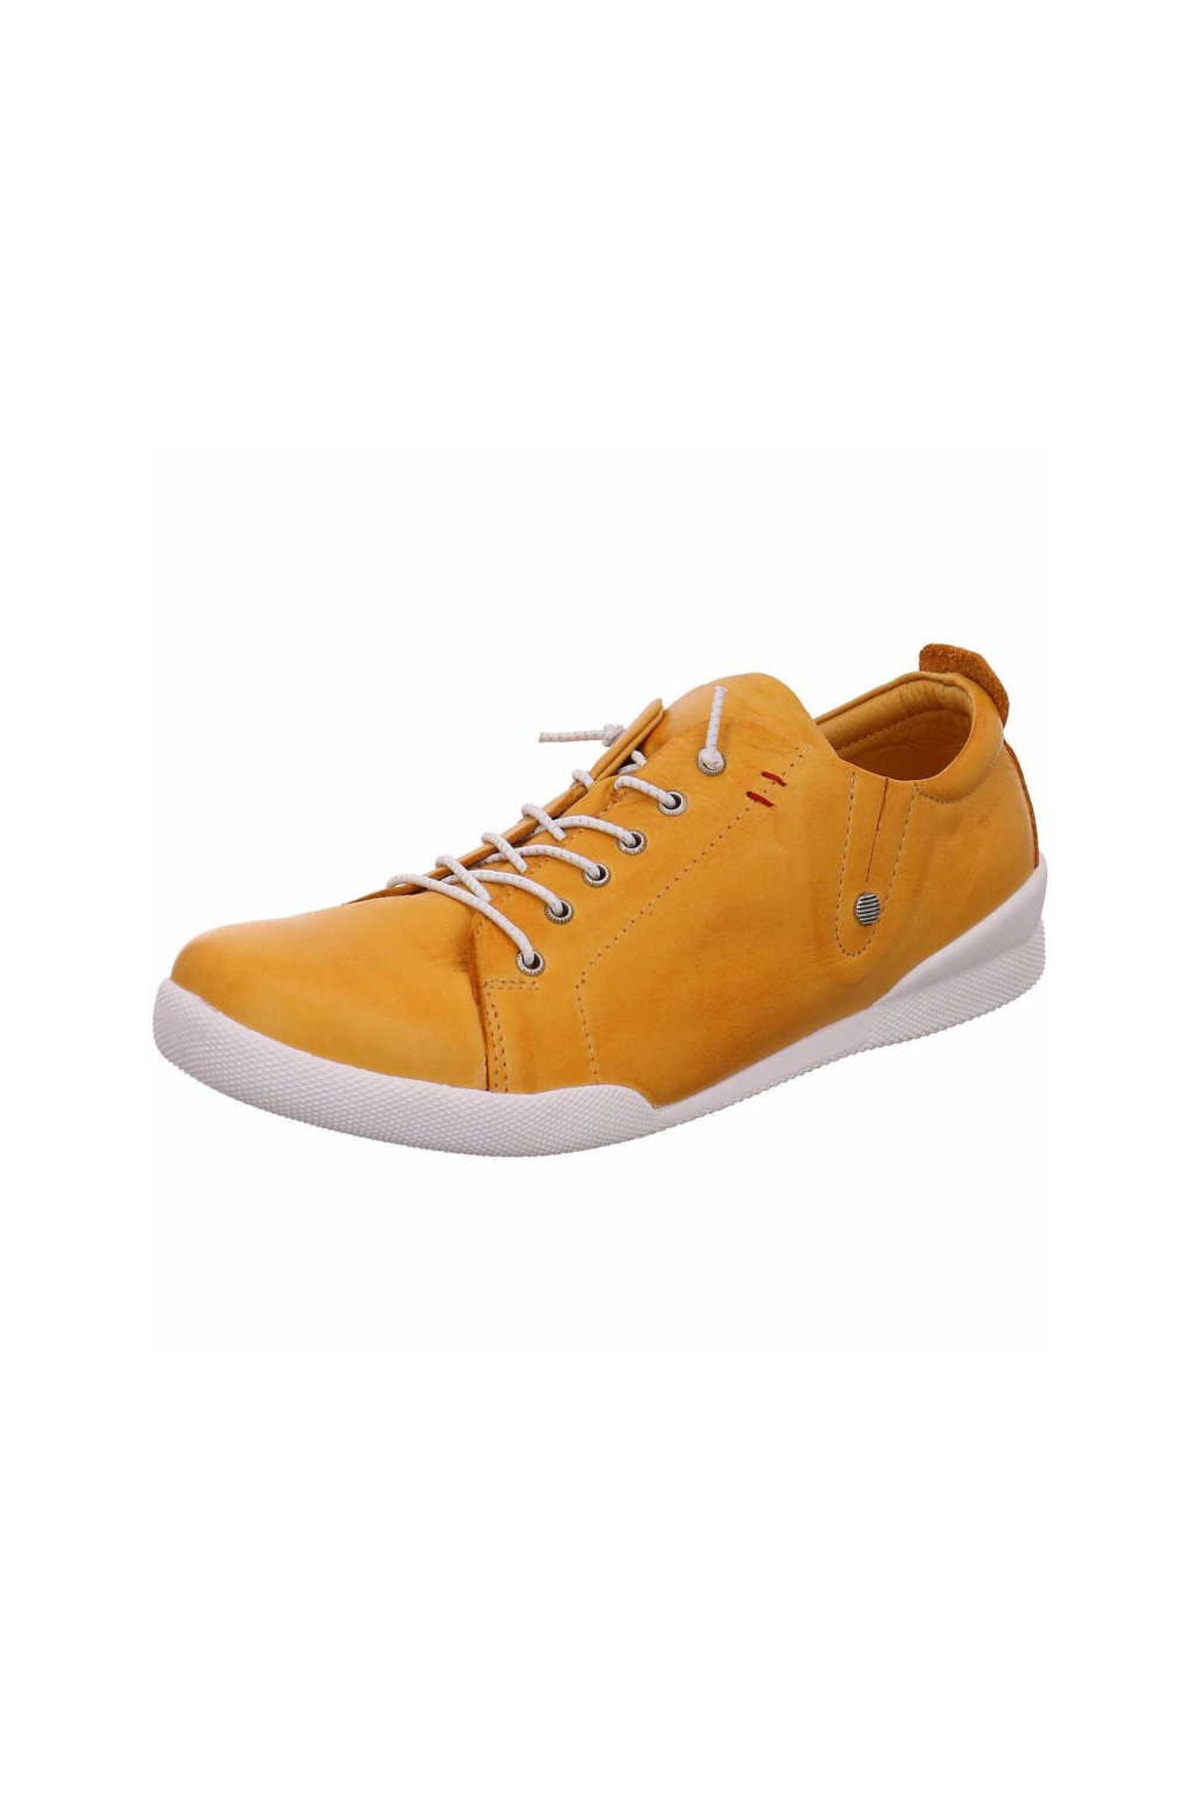 Andrea Conti Sneaker Gelb Flacher Absatz Fast ausverkauft